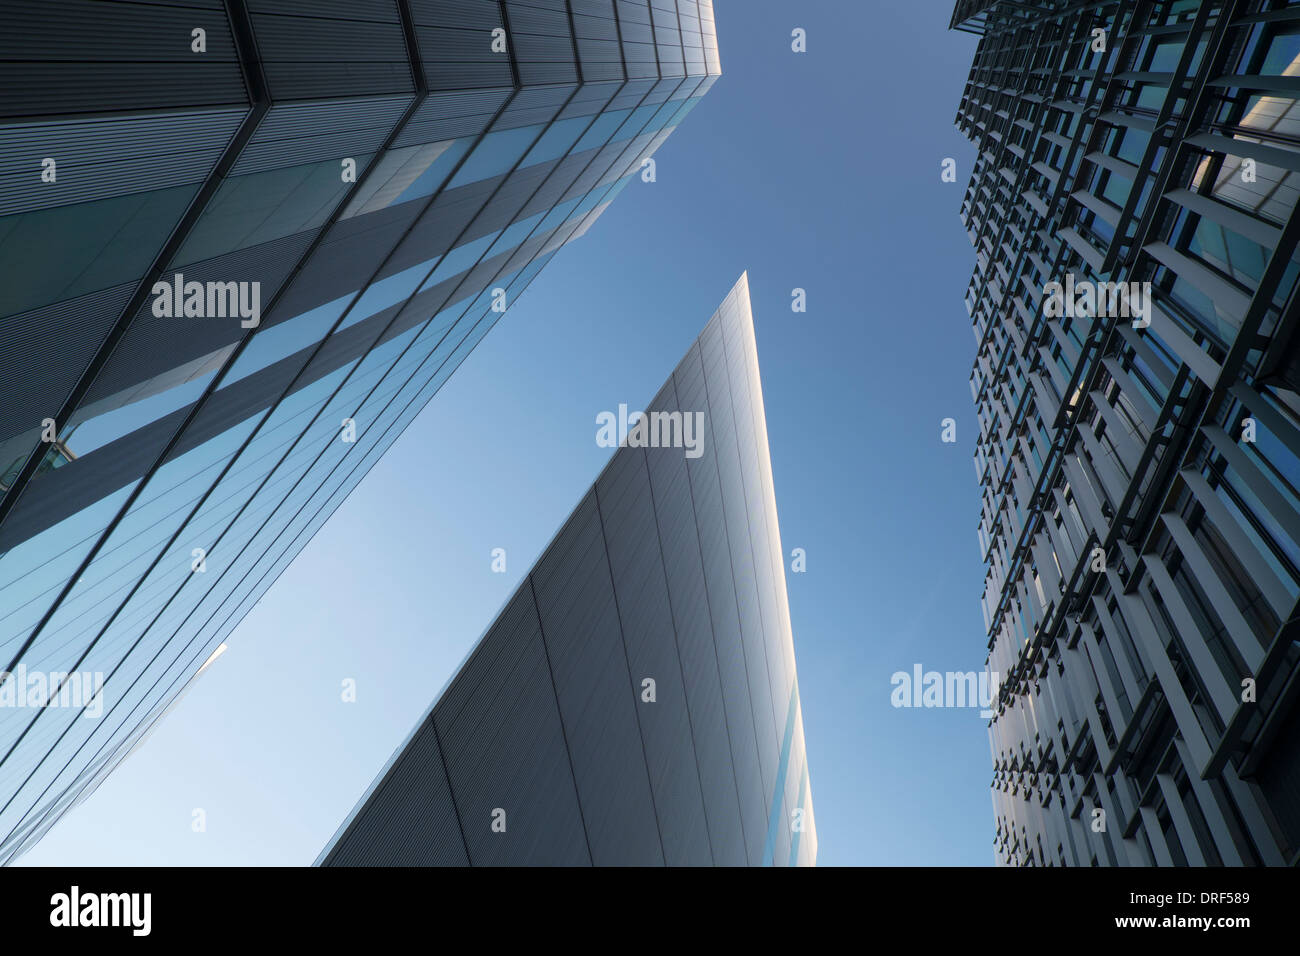 Immeuble de bureaux modernes contre le ciel bleu, du quartier financier, Londres Banque D'Images